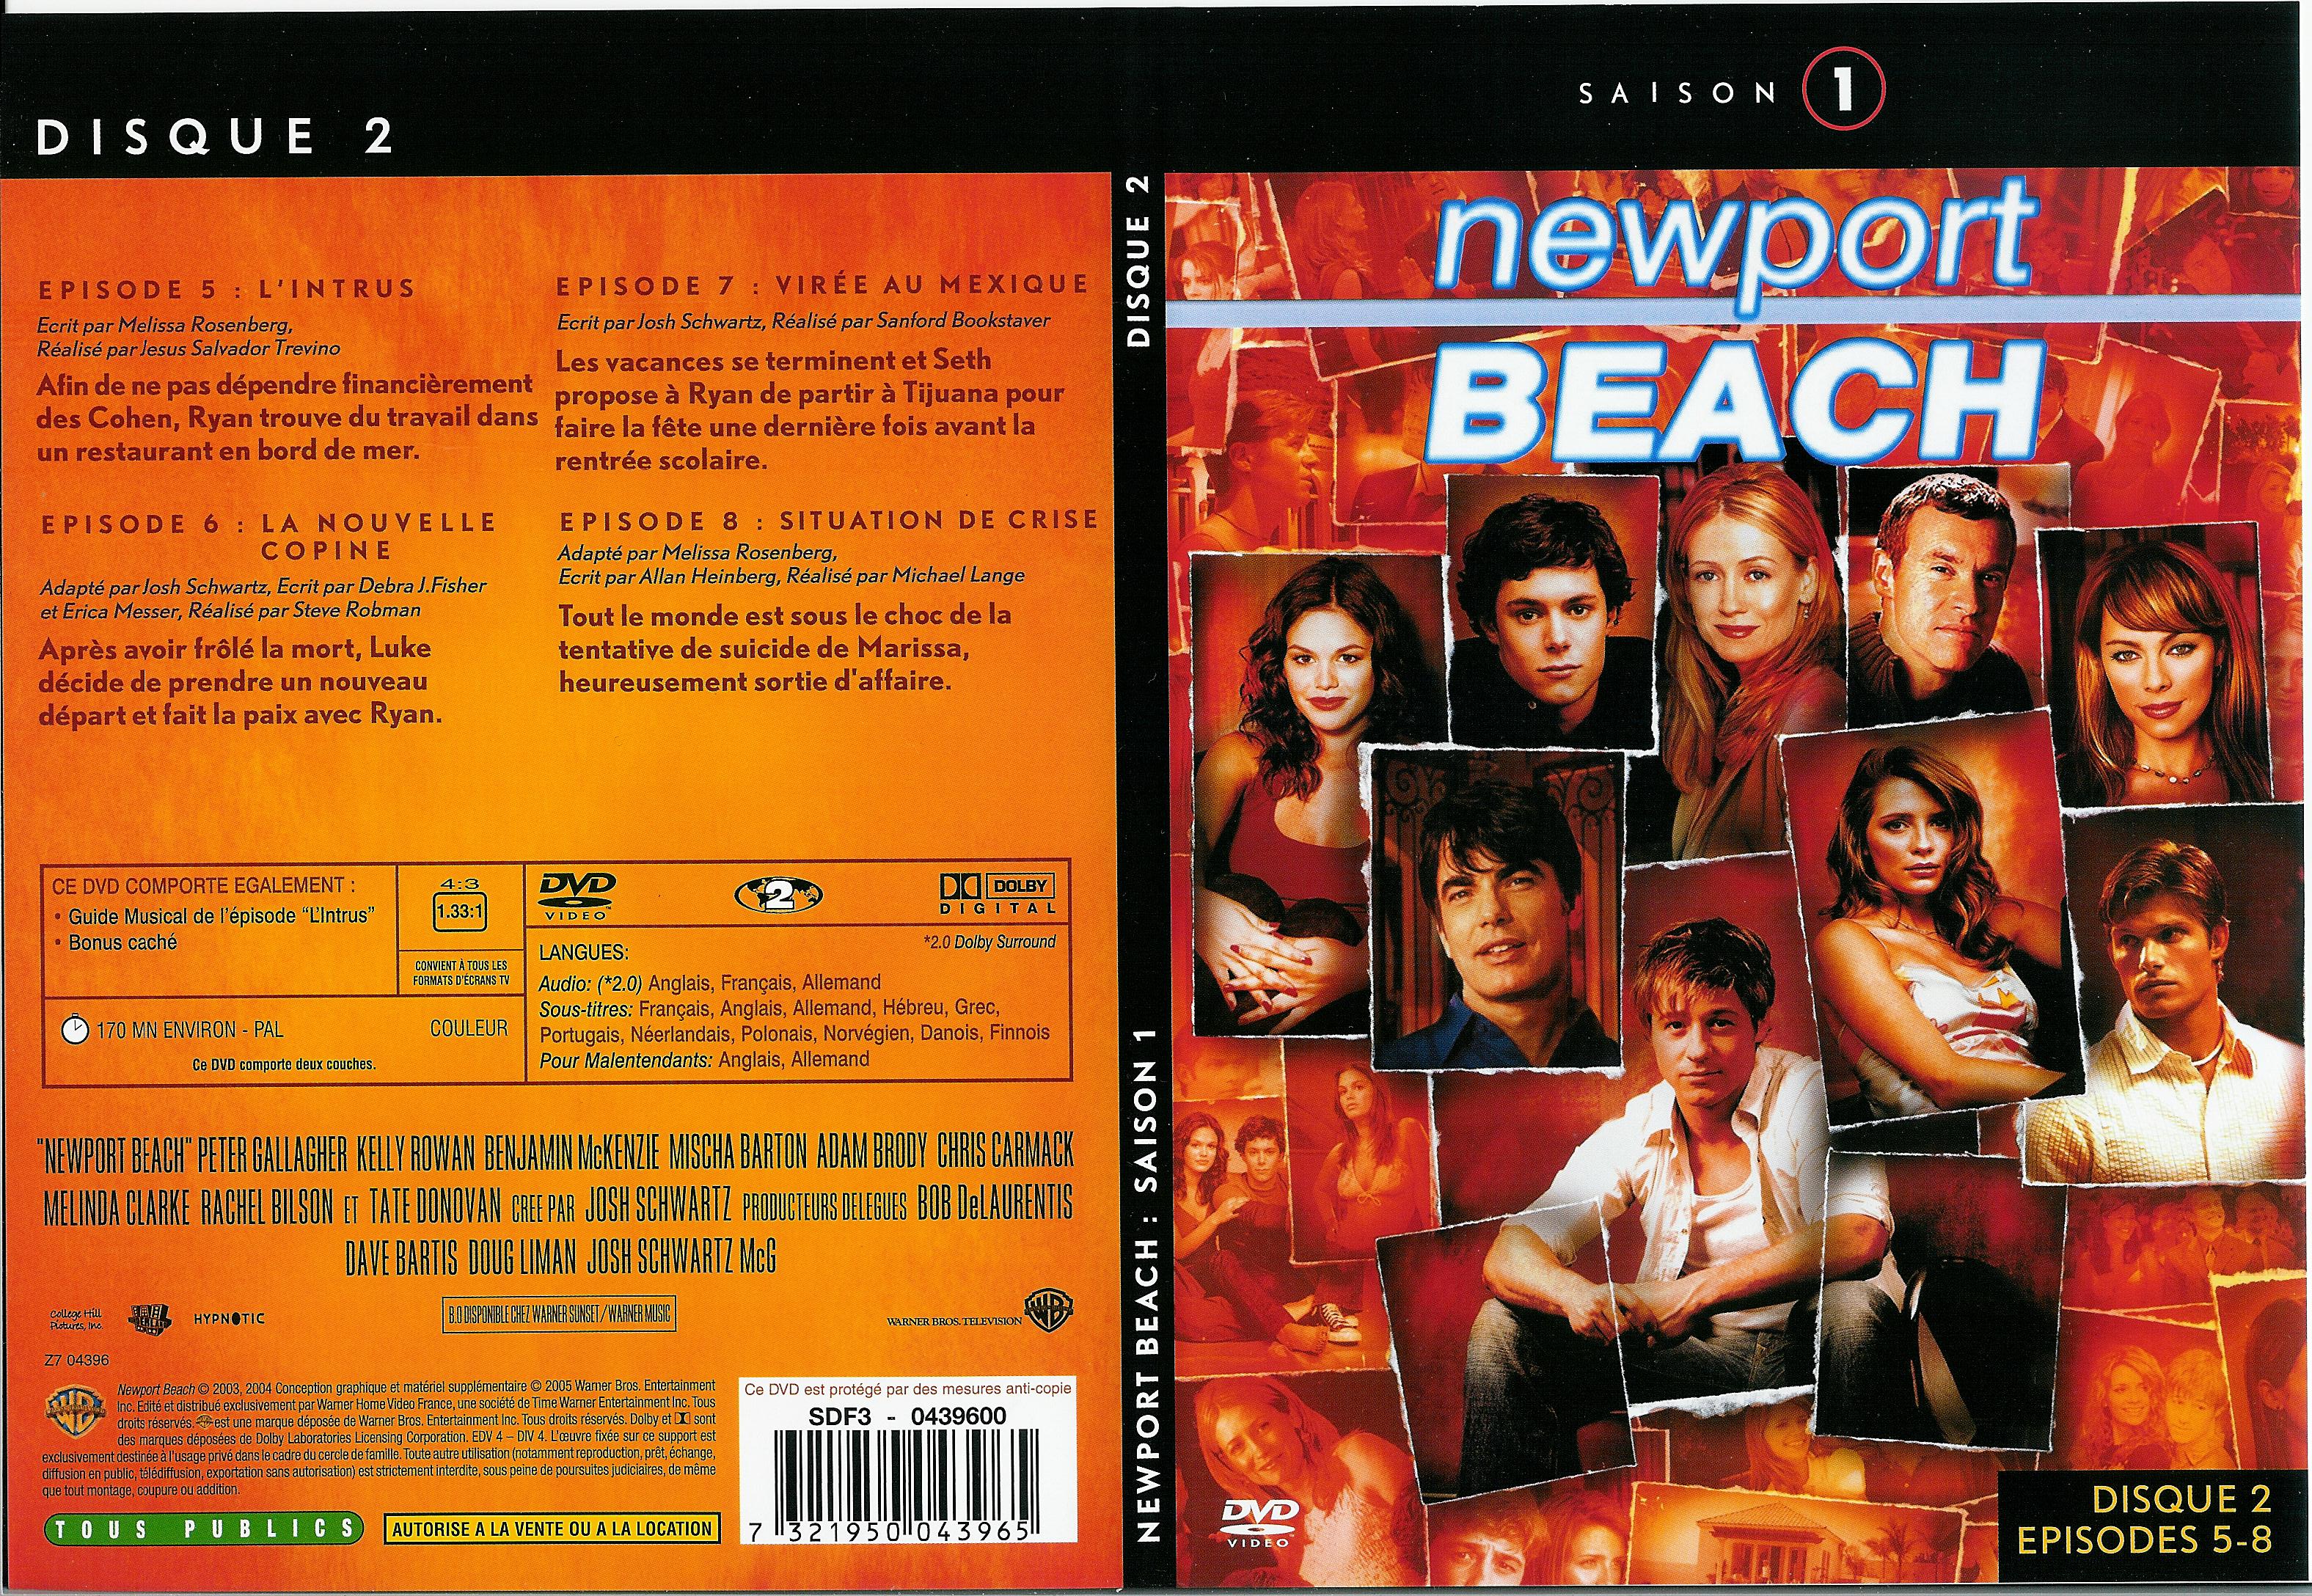 Jaquette DVD Newport Beach saison 1 vol 2